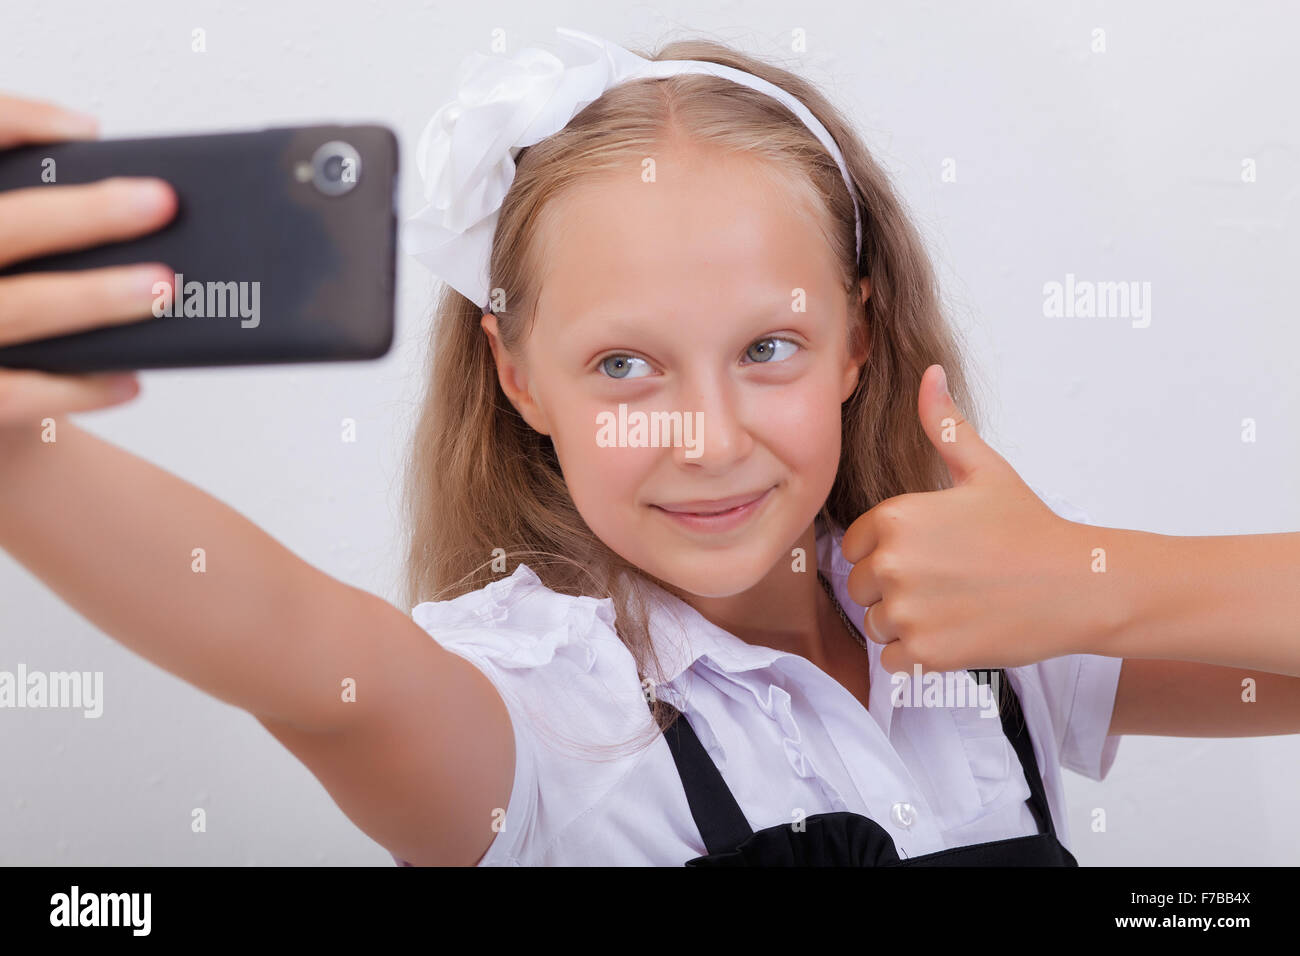 Recht Jugendlich Mädchen Die Die Selfies Mit Ihrem Smartphone Stockfotografie Alamy 